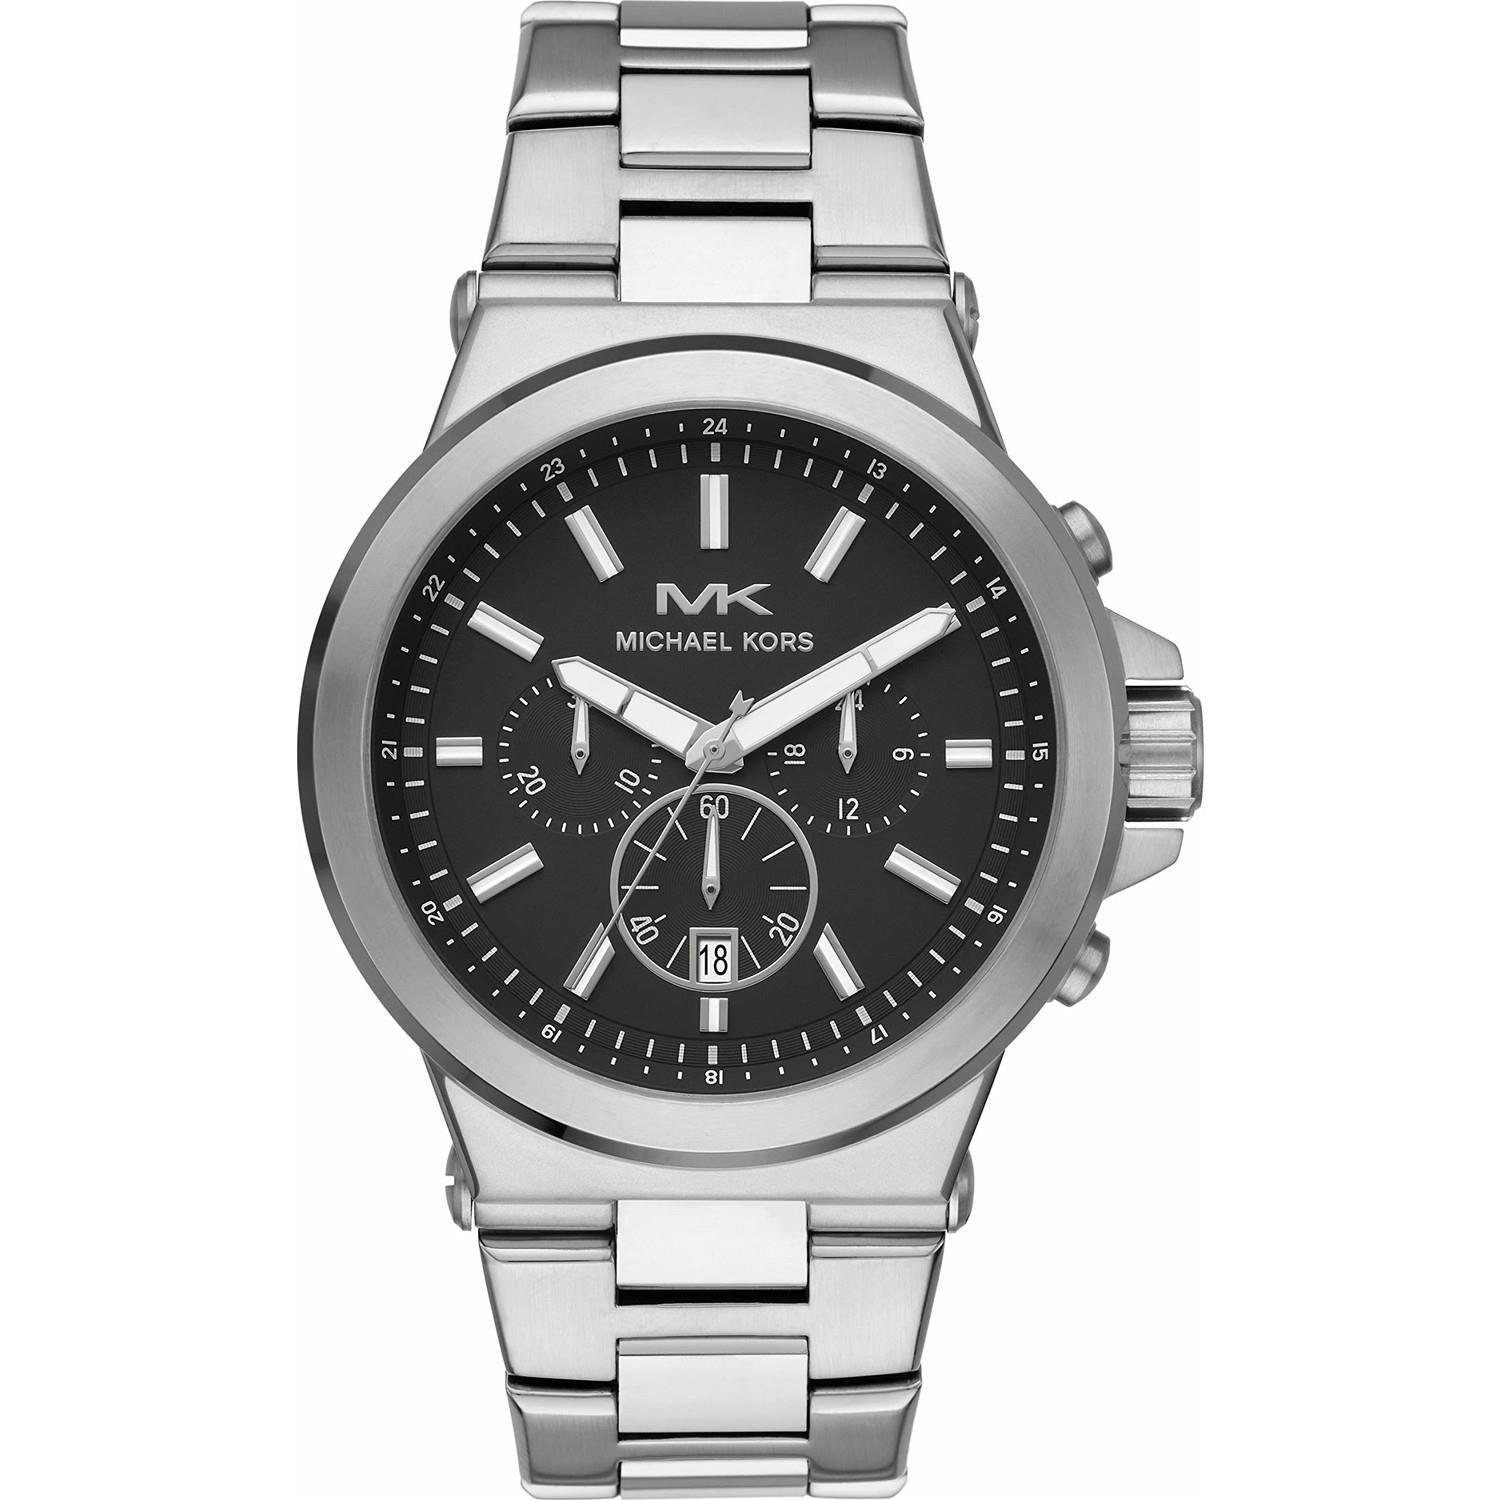 Michael Kors Men's Watches - Watch Home™